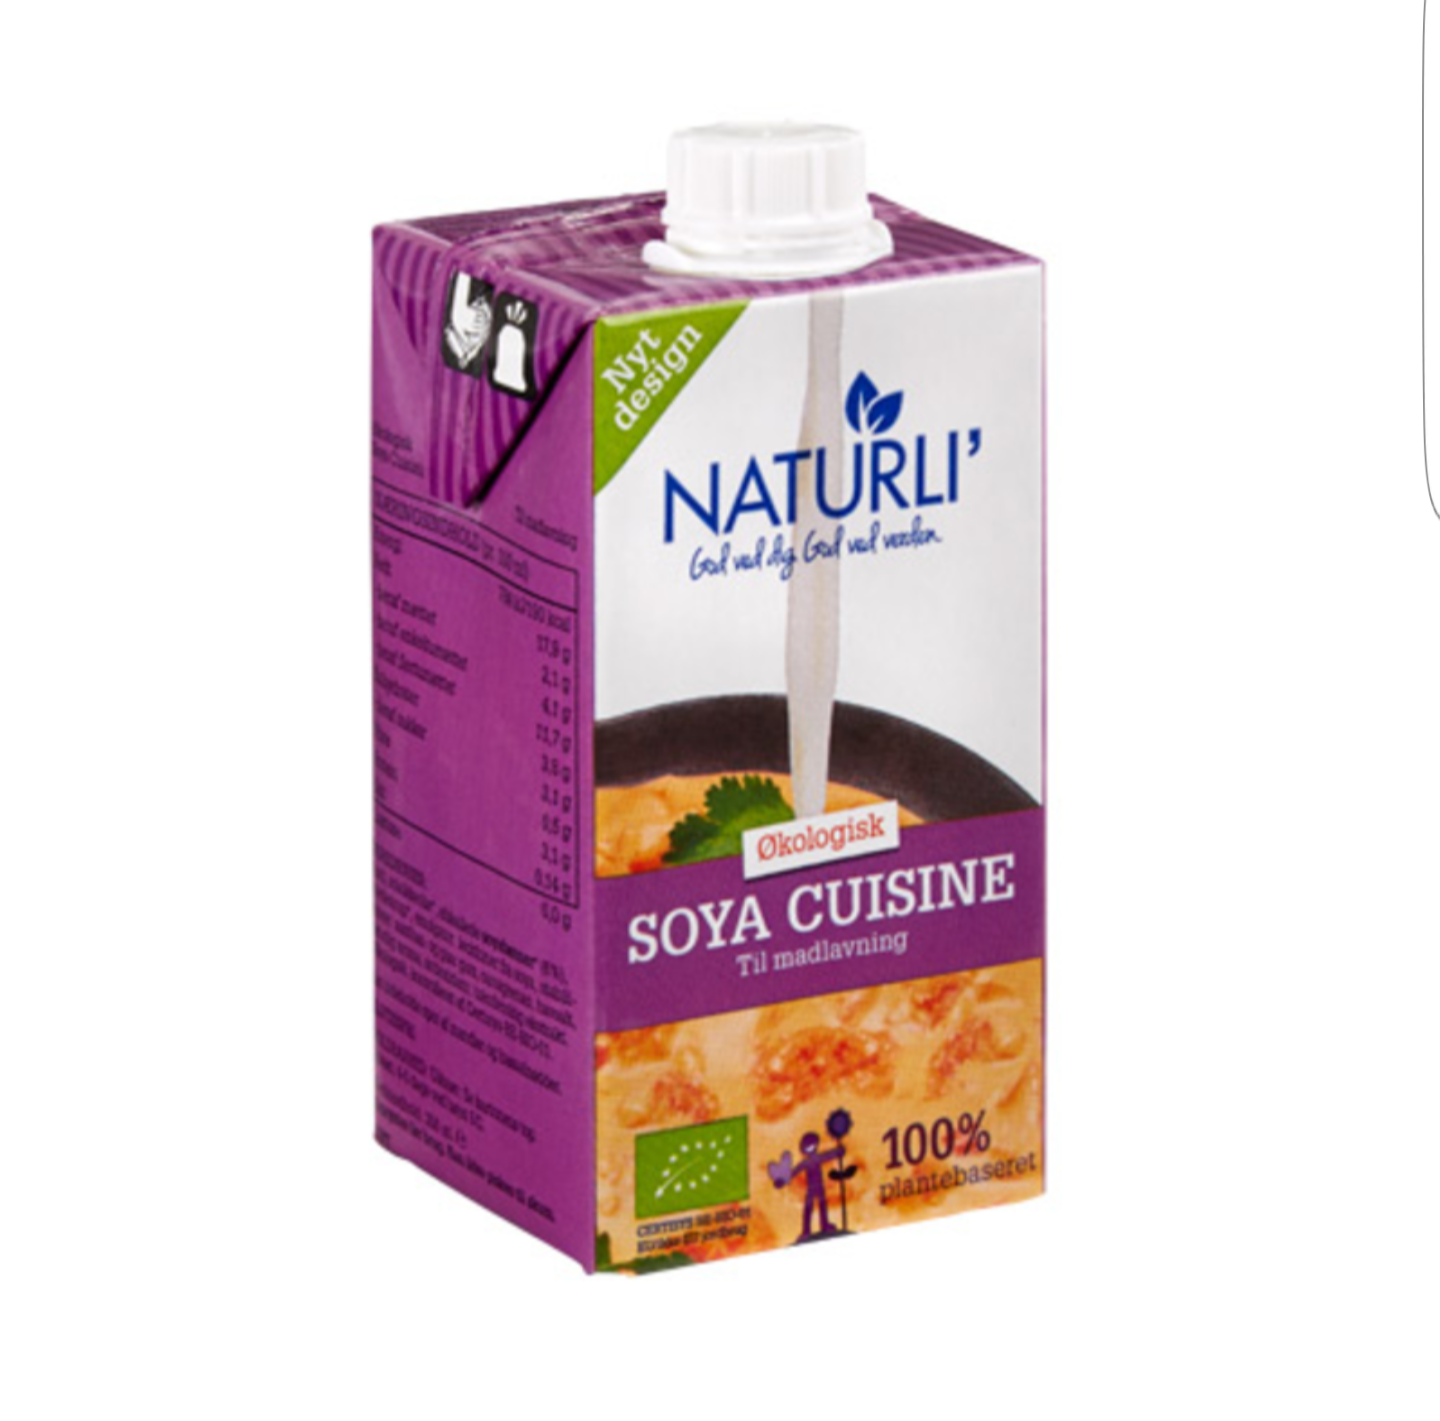 Soya cuisie ligner og smager madlavningsfløde, og den bruges på samme måde.